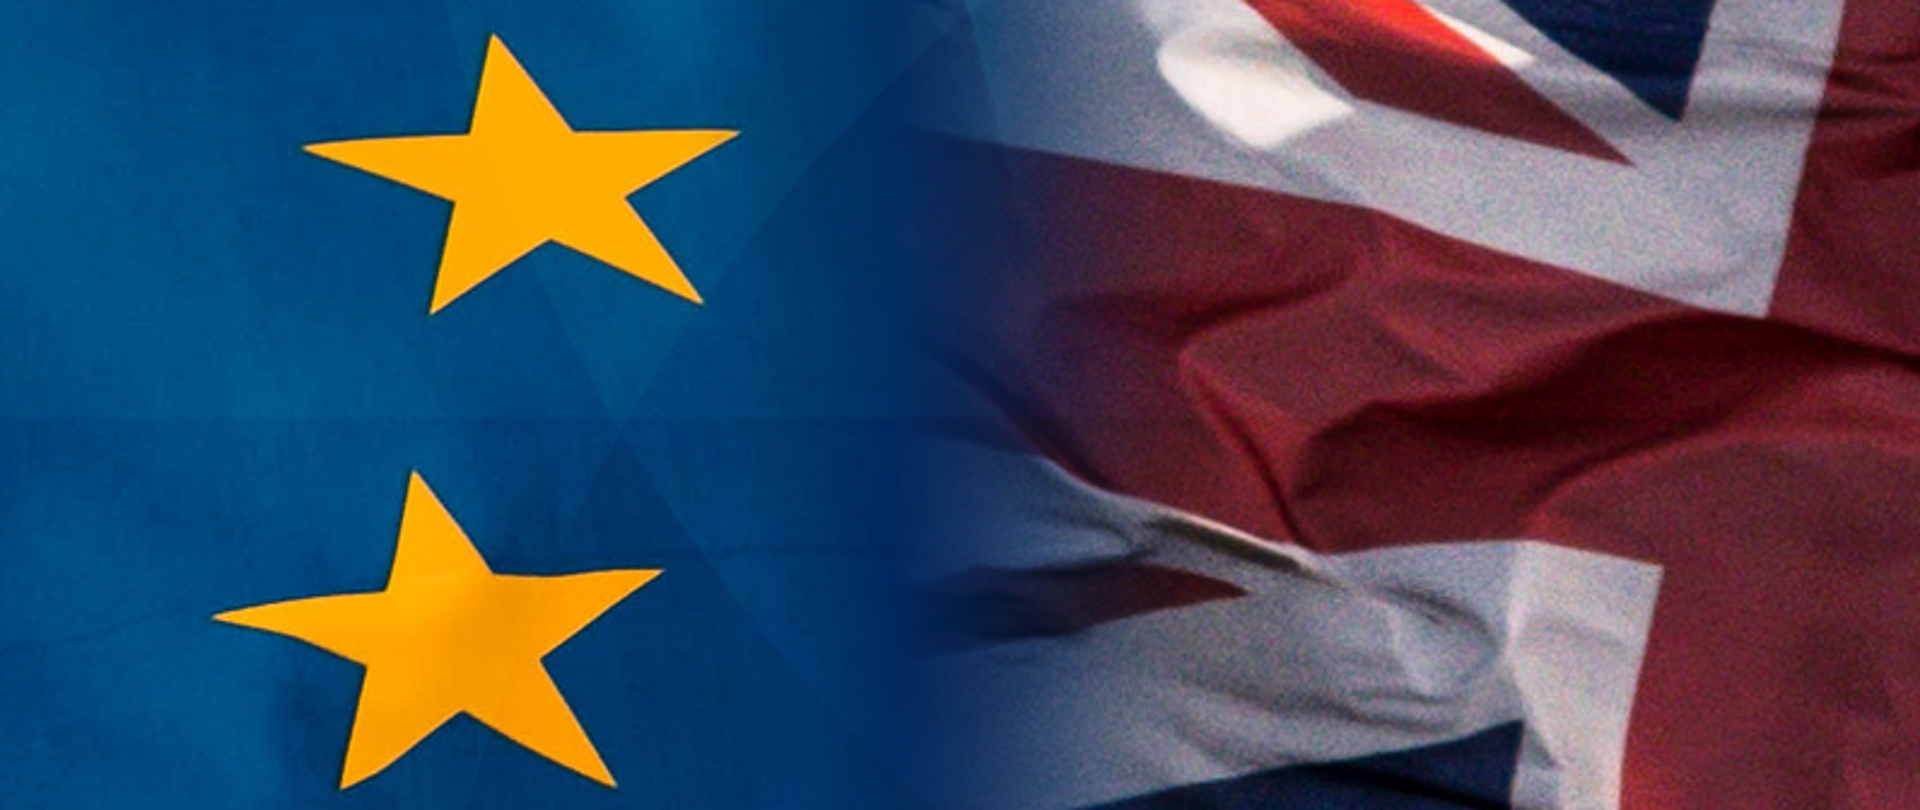 flagi UE i Wielkiej Brytanii